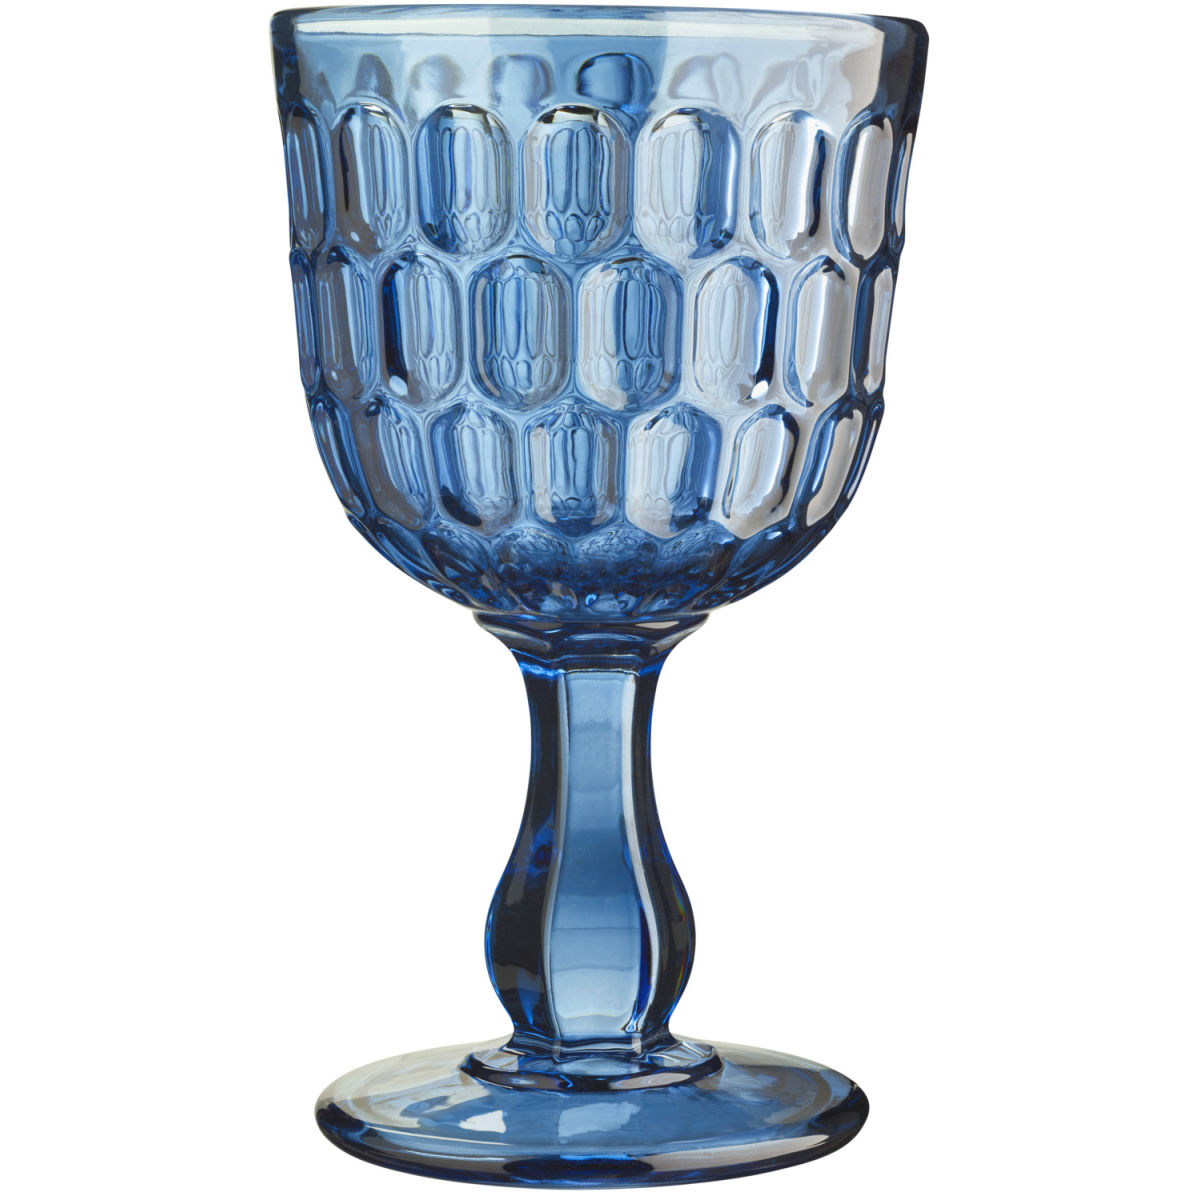 Vega Wijnglas Isabella; 300ml, 9.2x15.8 cm (ØxH); blauw; 6 stuk / verpakking